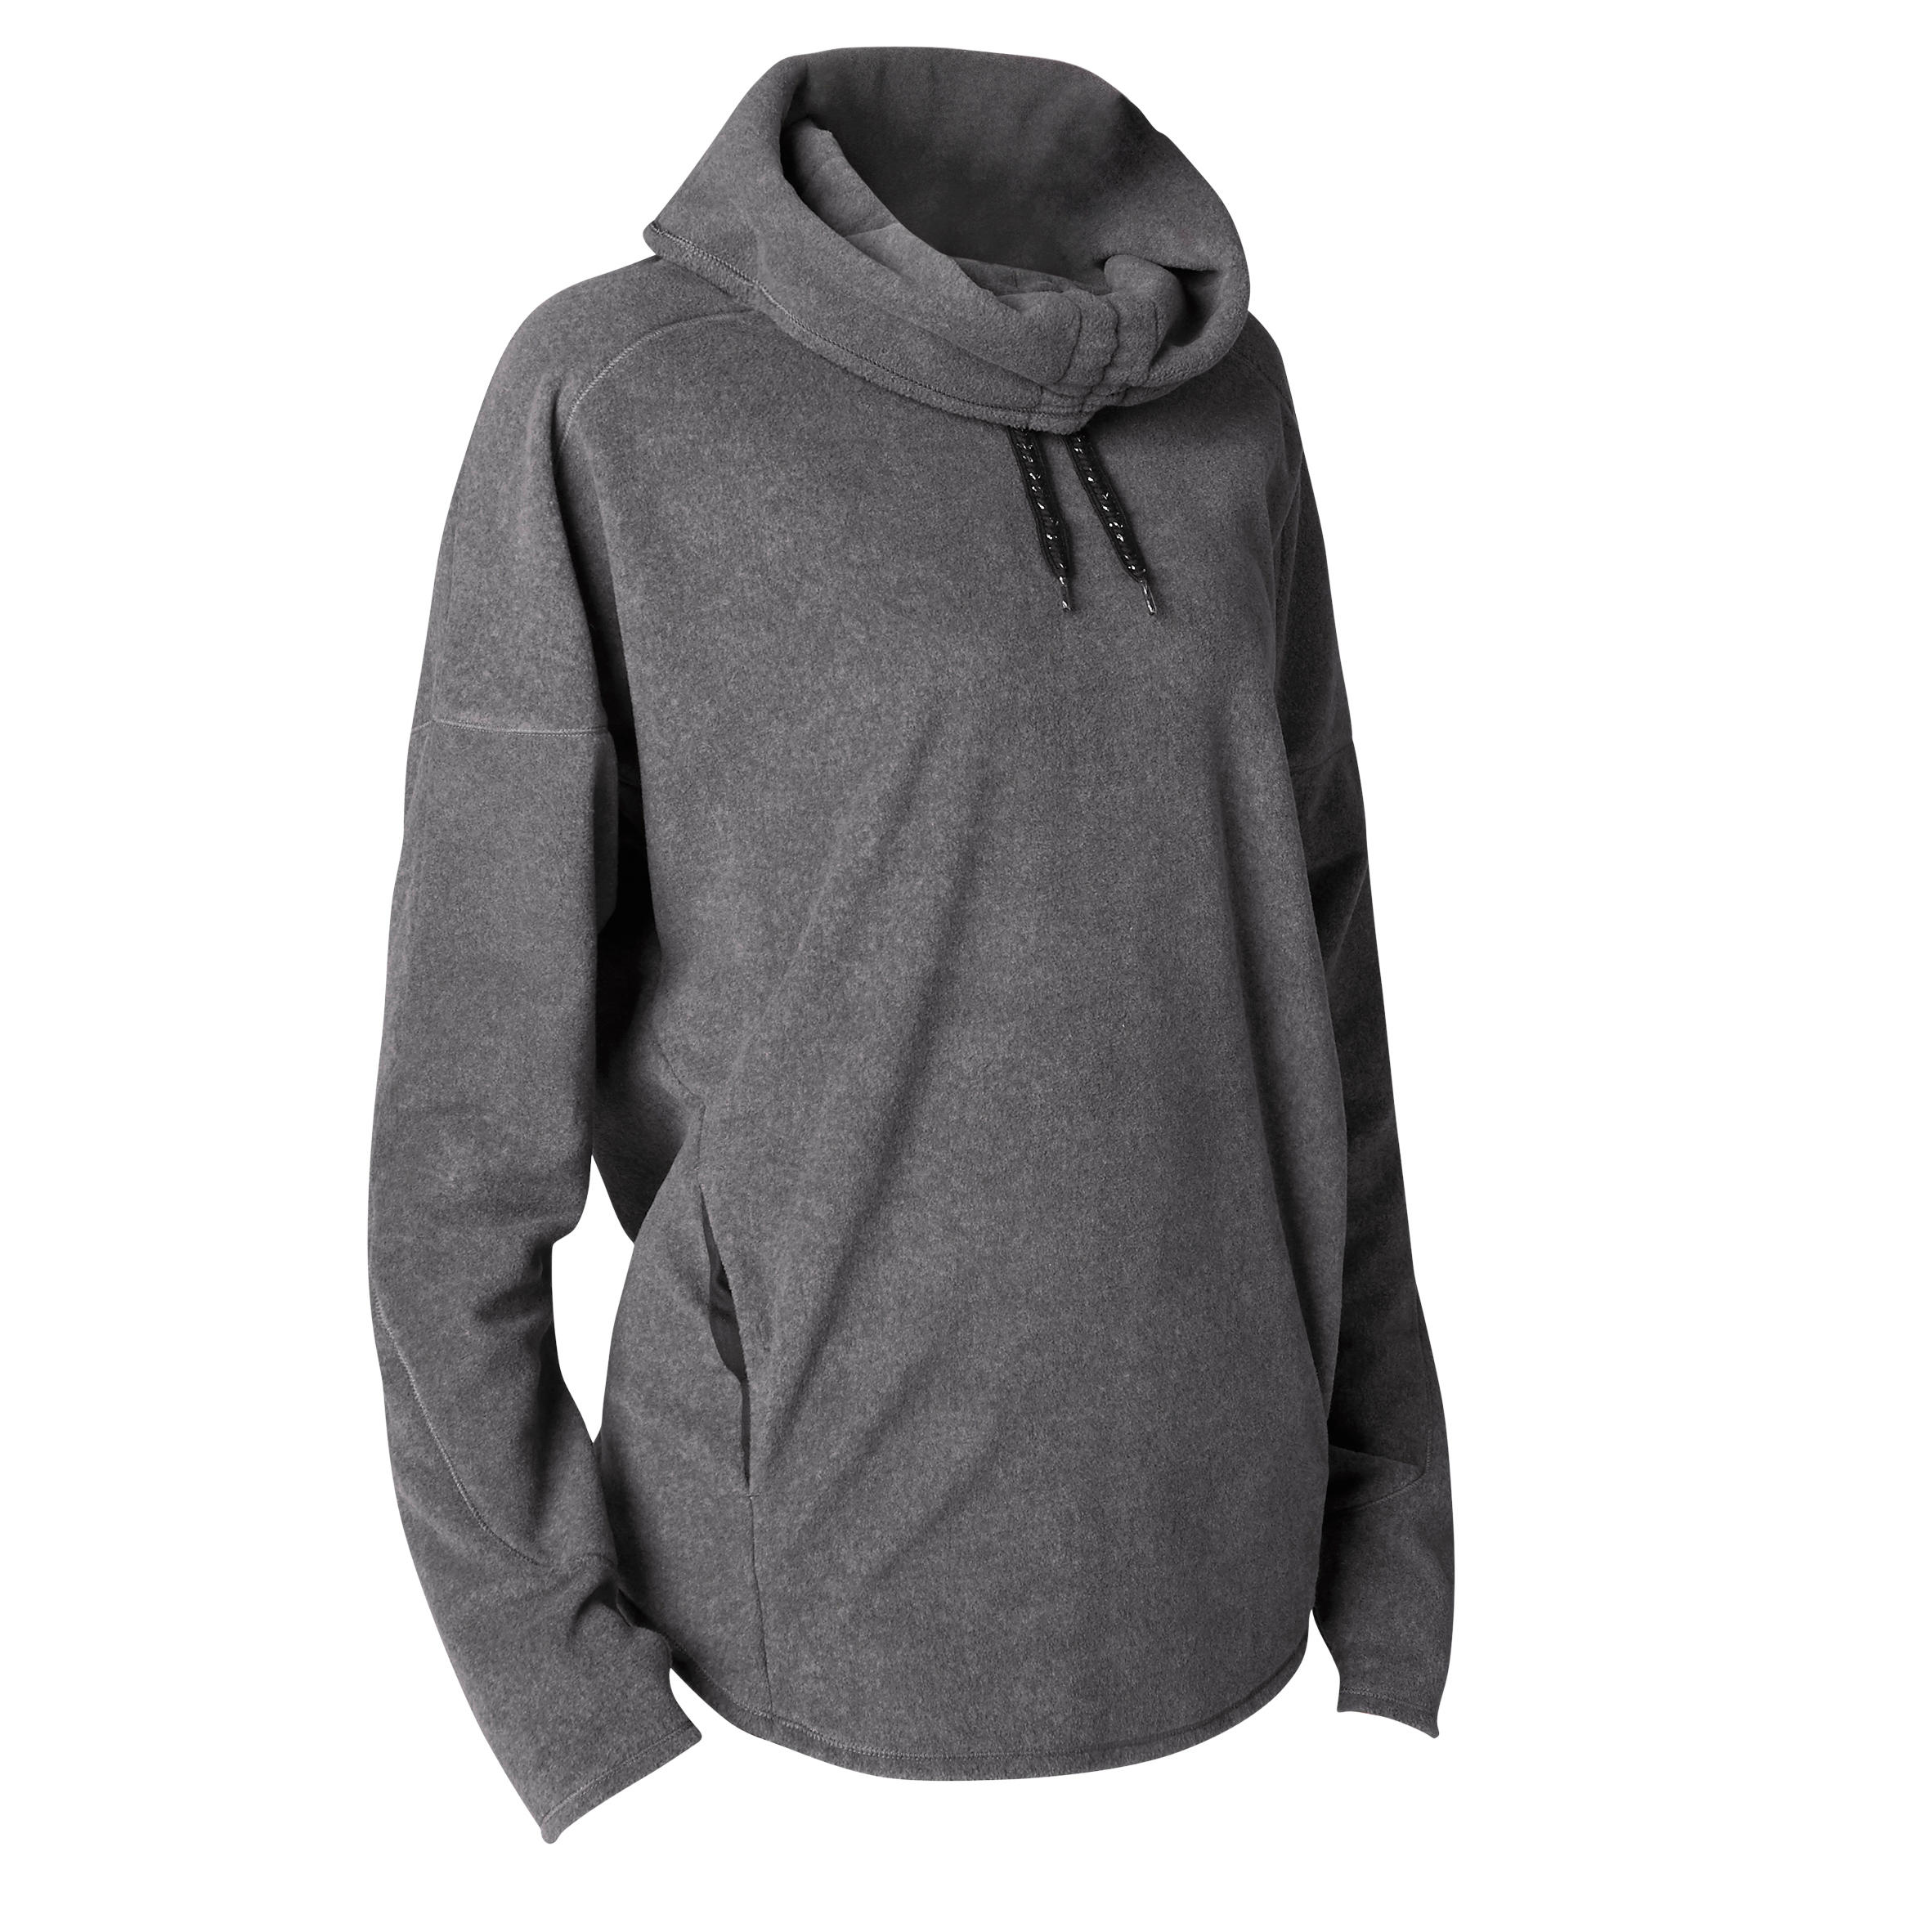 WOMEN FASHION Jumpers & Sweatshirts Fleece Gray XS Quechua sweatshirt discount 75% 